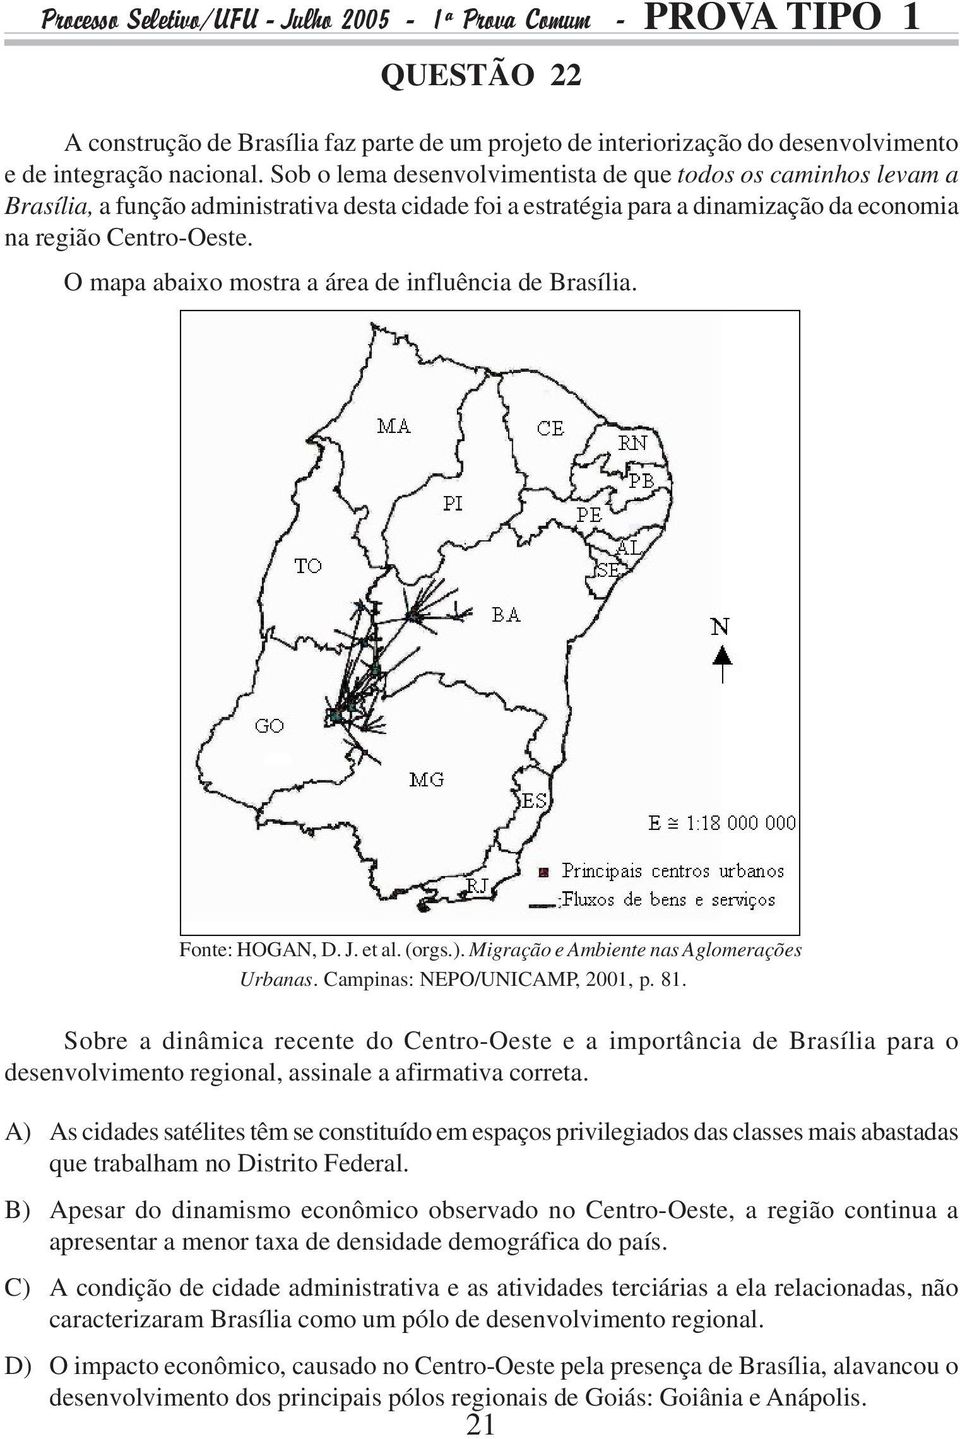 O mapa abaixo mostra a área de influência de Brasília. Fonte: HOGAN, D. J. et al. (orgs.). Migração e Ambiente nas Aglomerações Urbanas. Campinas: NEPO/UNICAMP, 2001, p. 81.